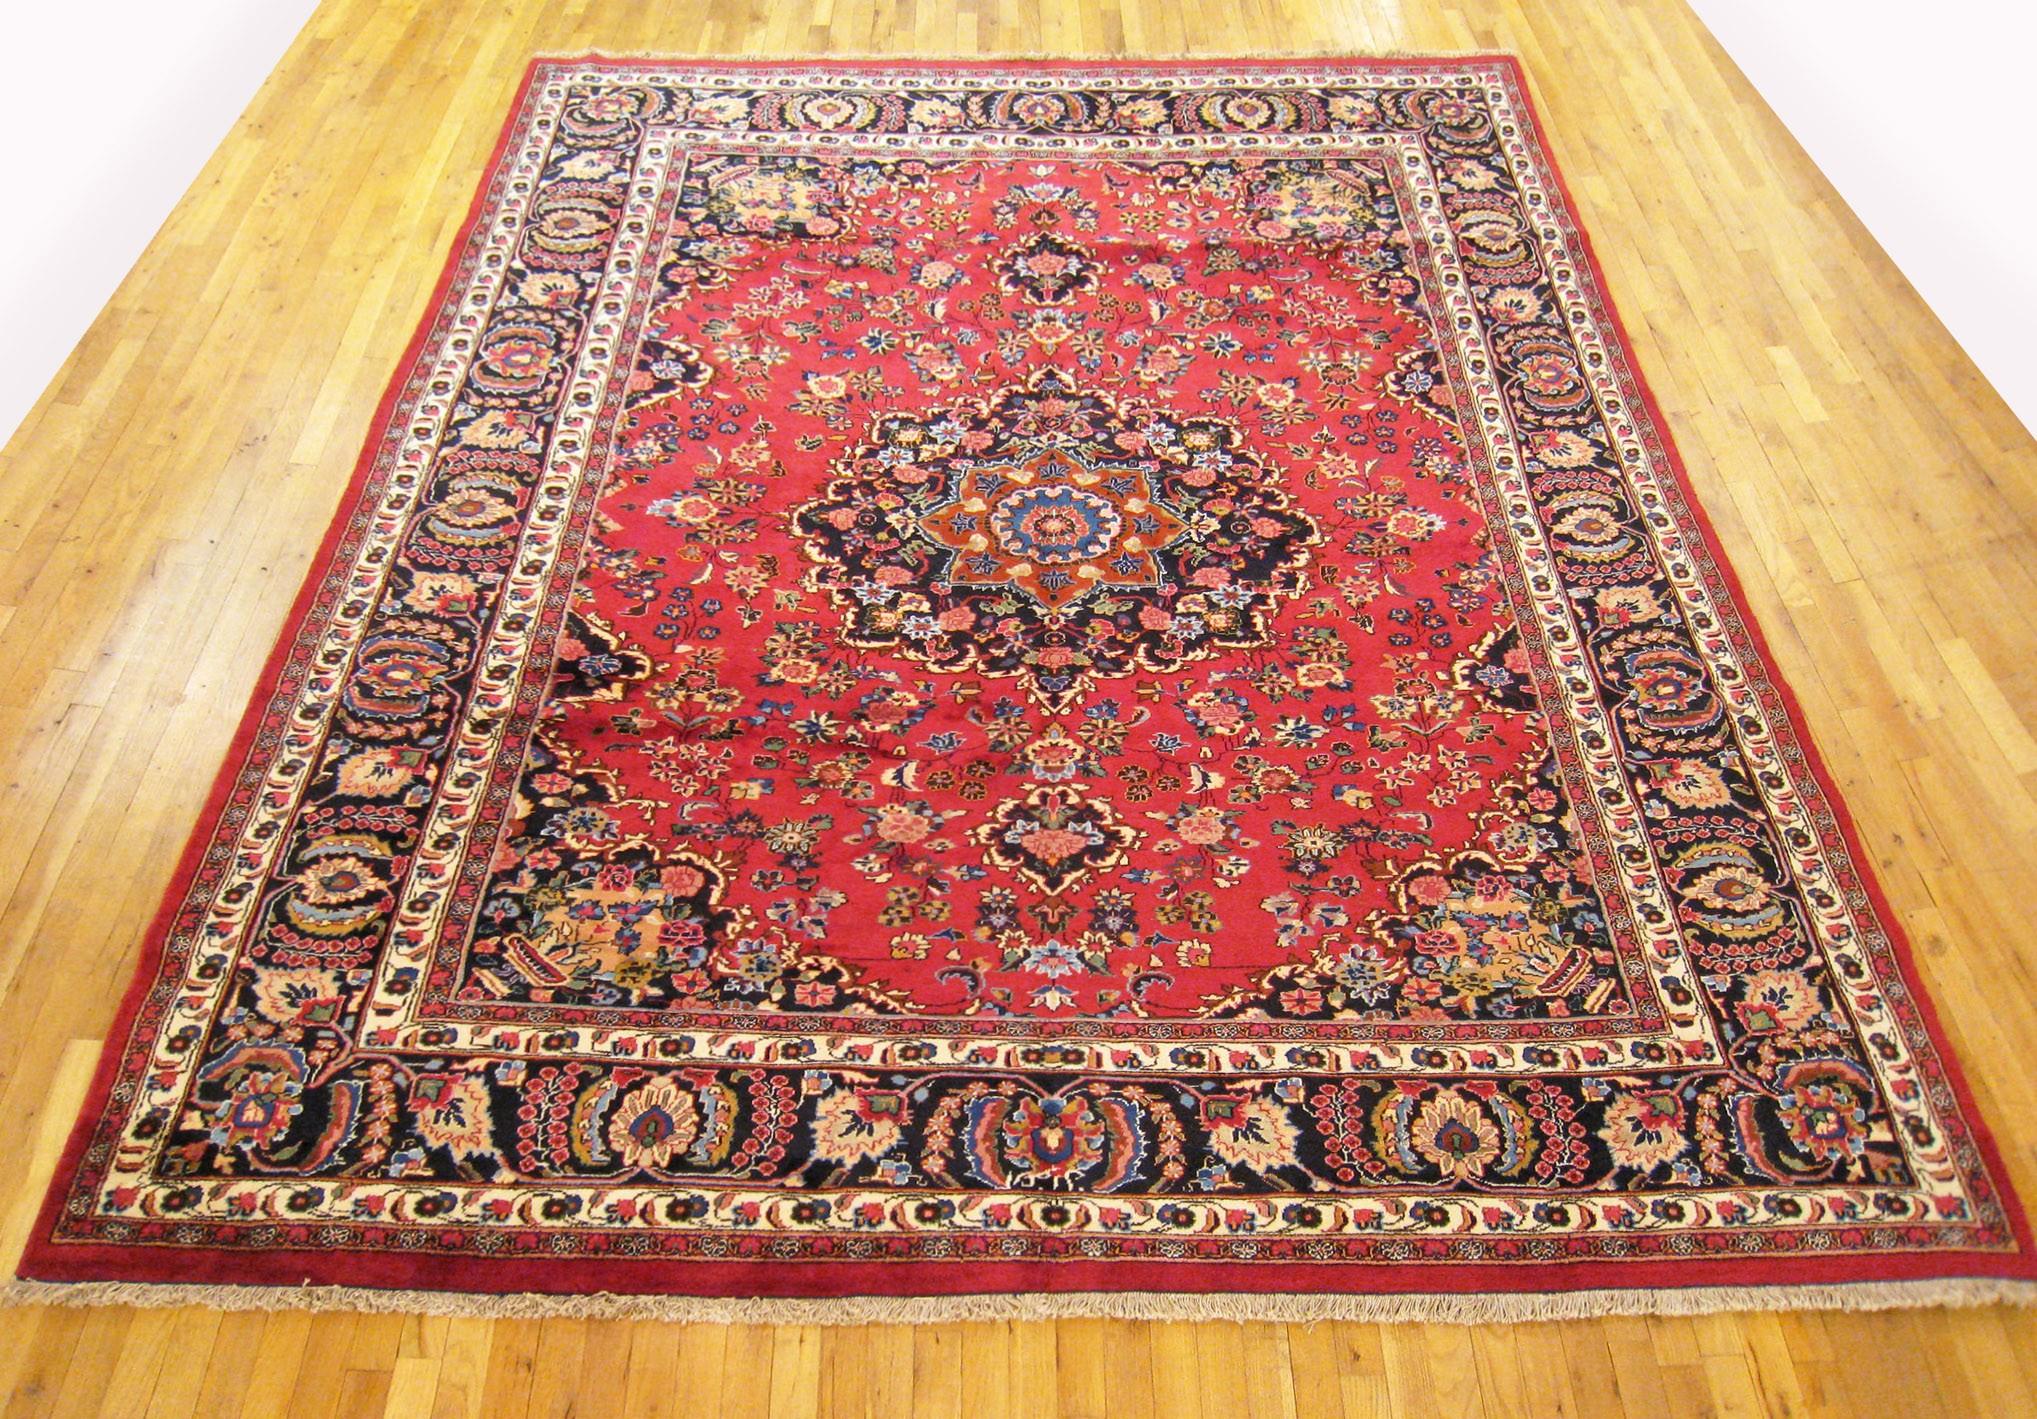 Vintage Persian Mesh Orientteppich, Raumgröße

Ein Vintage Persisch Mesh orientalischen Teppich, Größe 11'7 